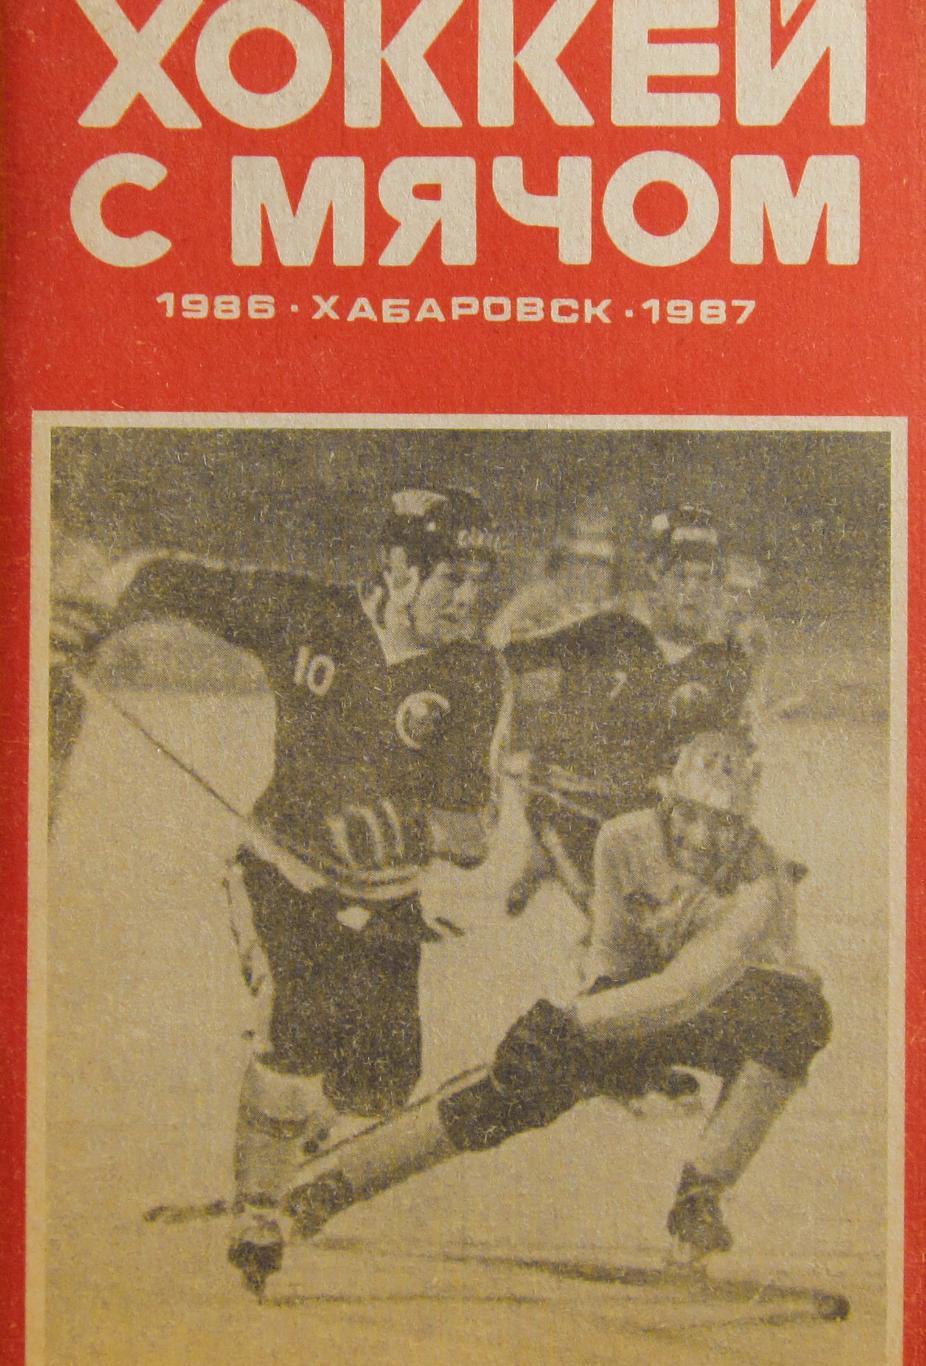 Справочник.Хоккей с мячом, Хабаровск 1986-87